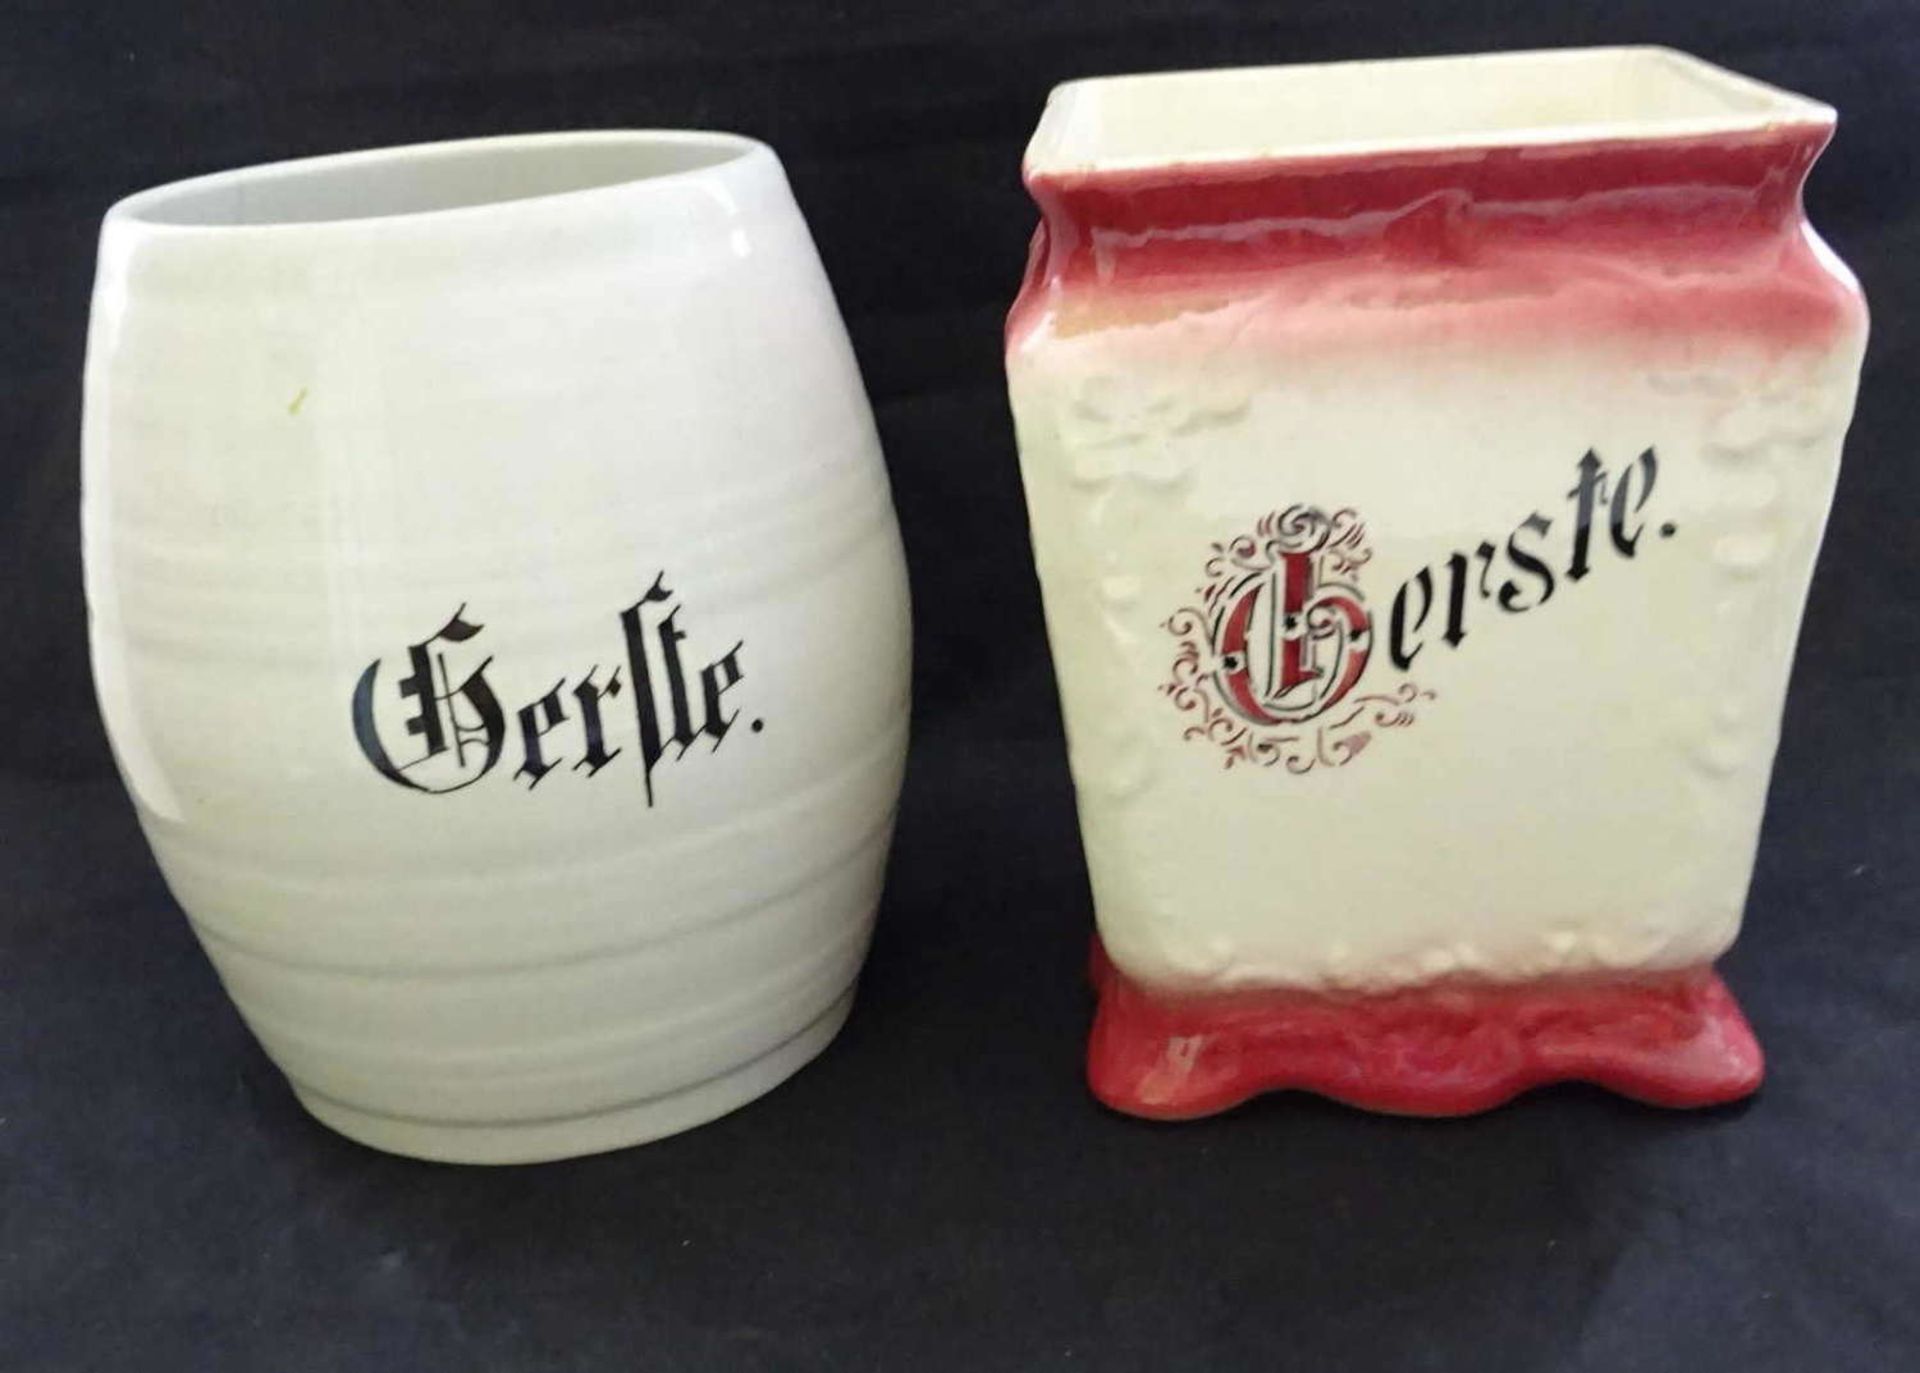 2 Vorratsdosen ohne Deckel "Gerste", 1x Weinrot, teilweise bestossen 2 storage jars without lid "